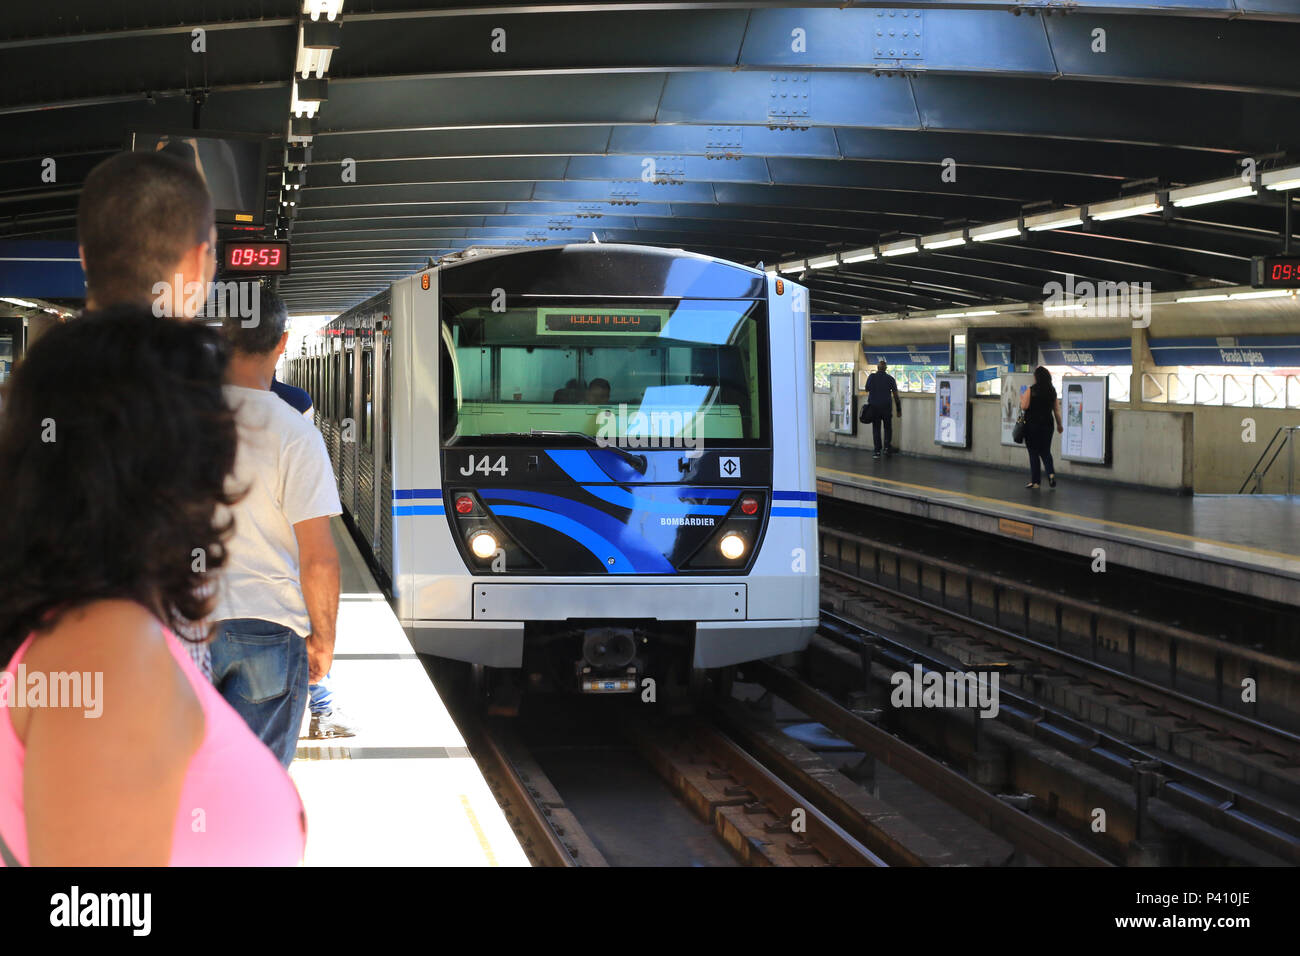 Trem chegando na plataforma do metrô da estação Parada Inglesa, zona norte de São Paulo. Stock Photo